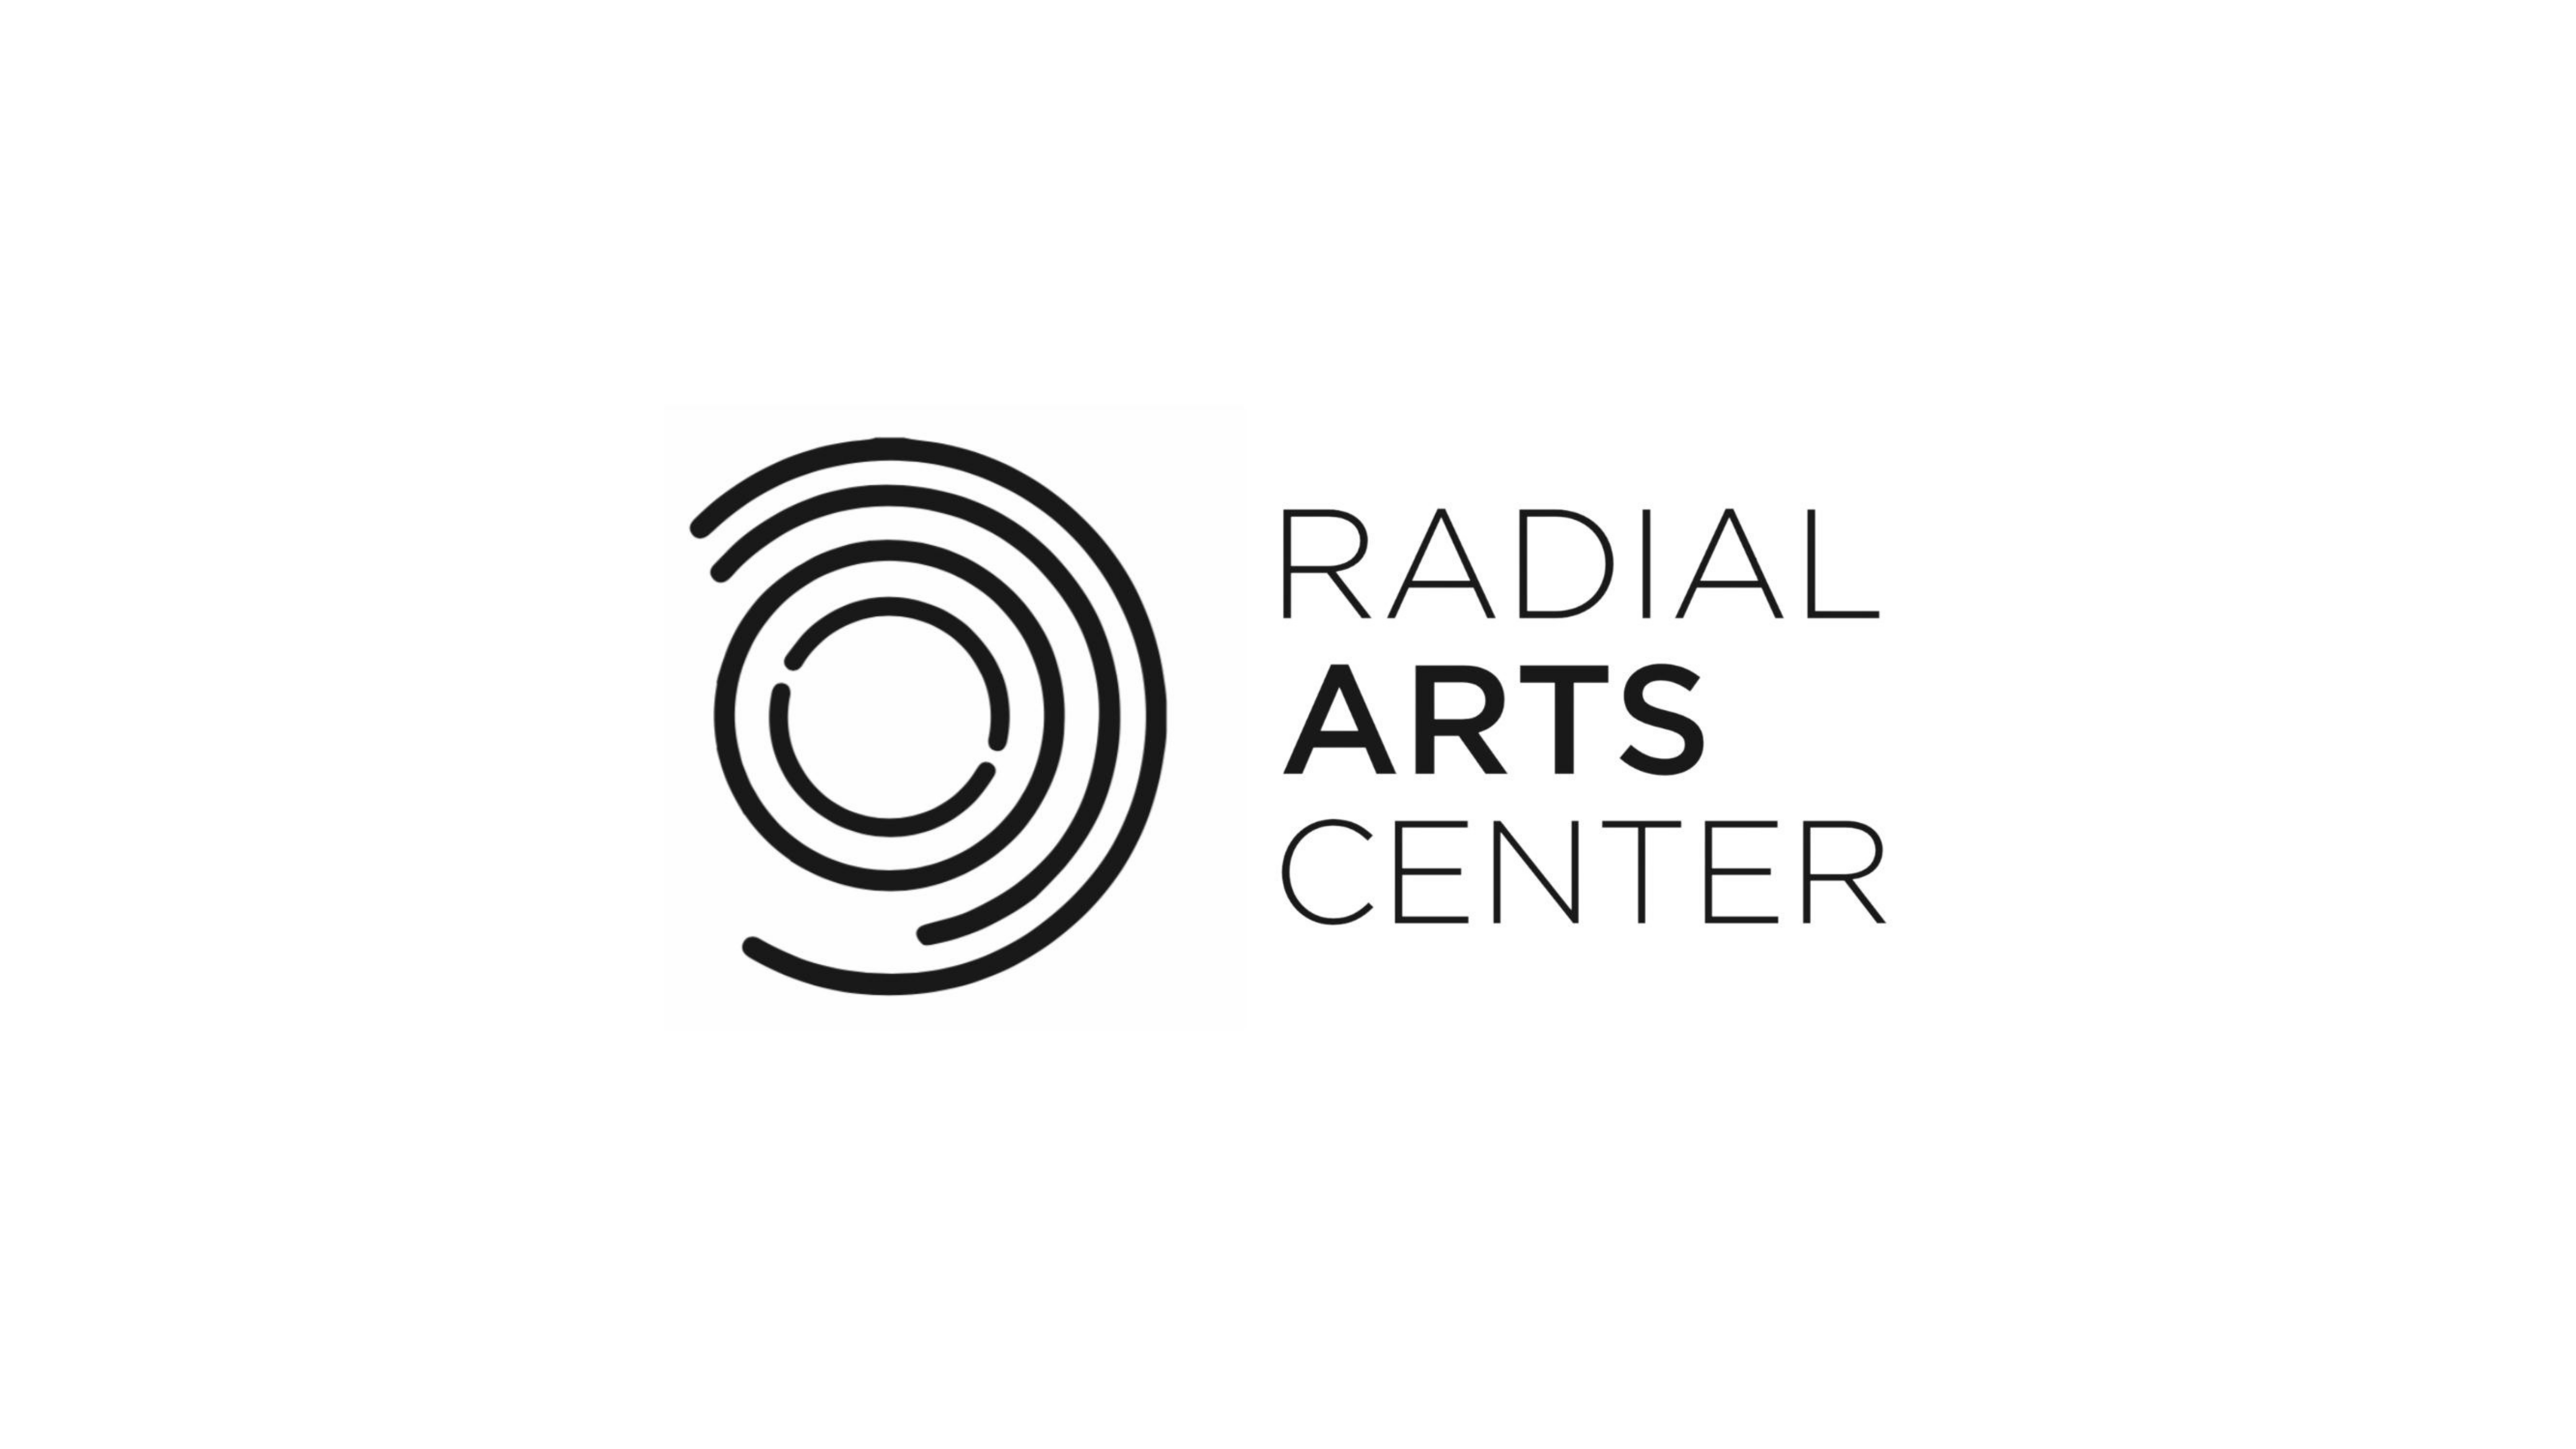 Radial Arts Center